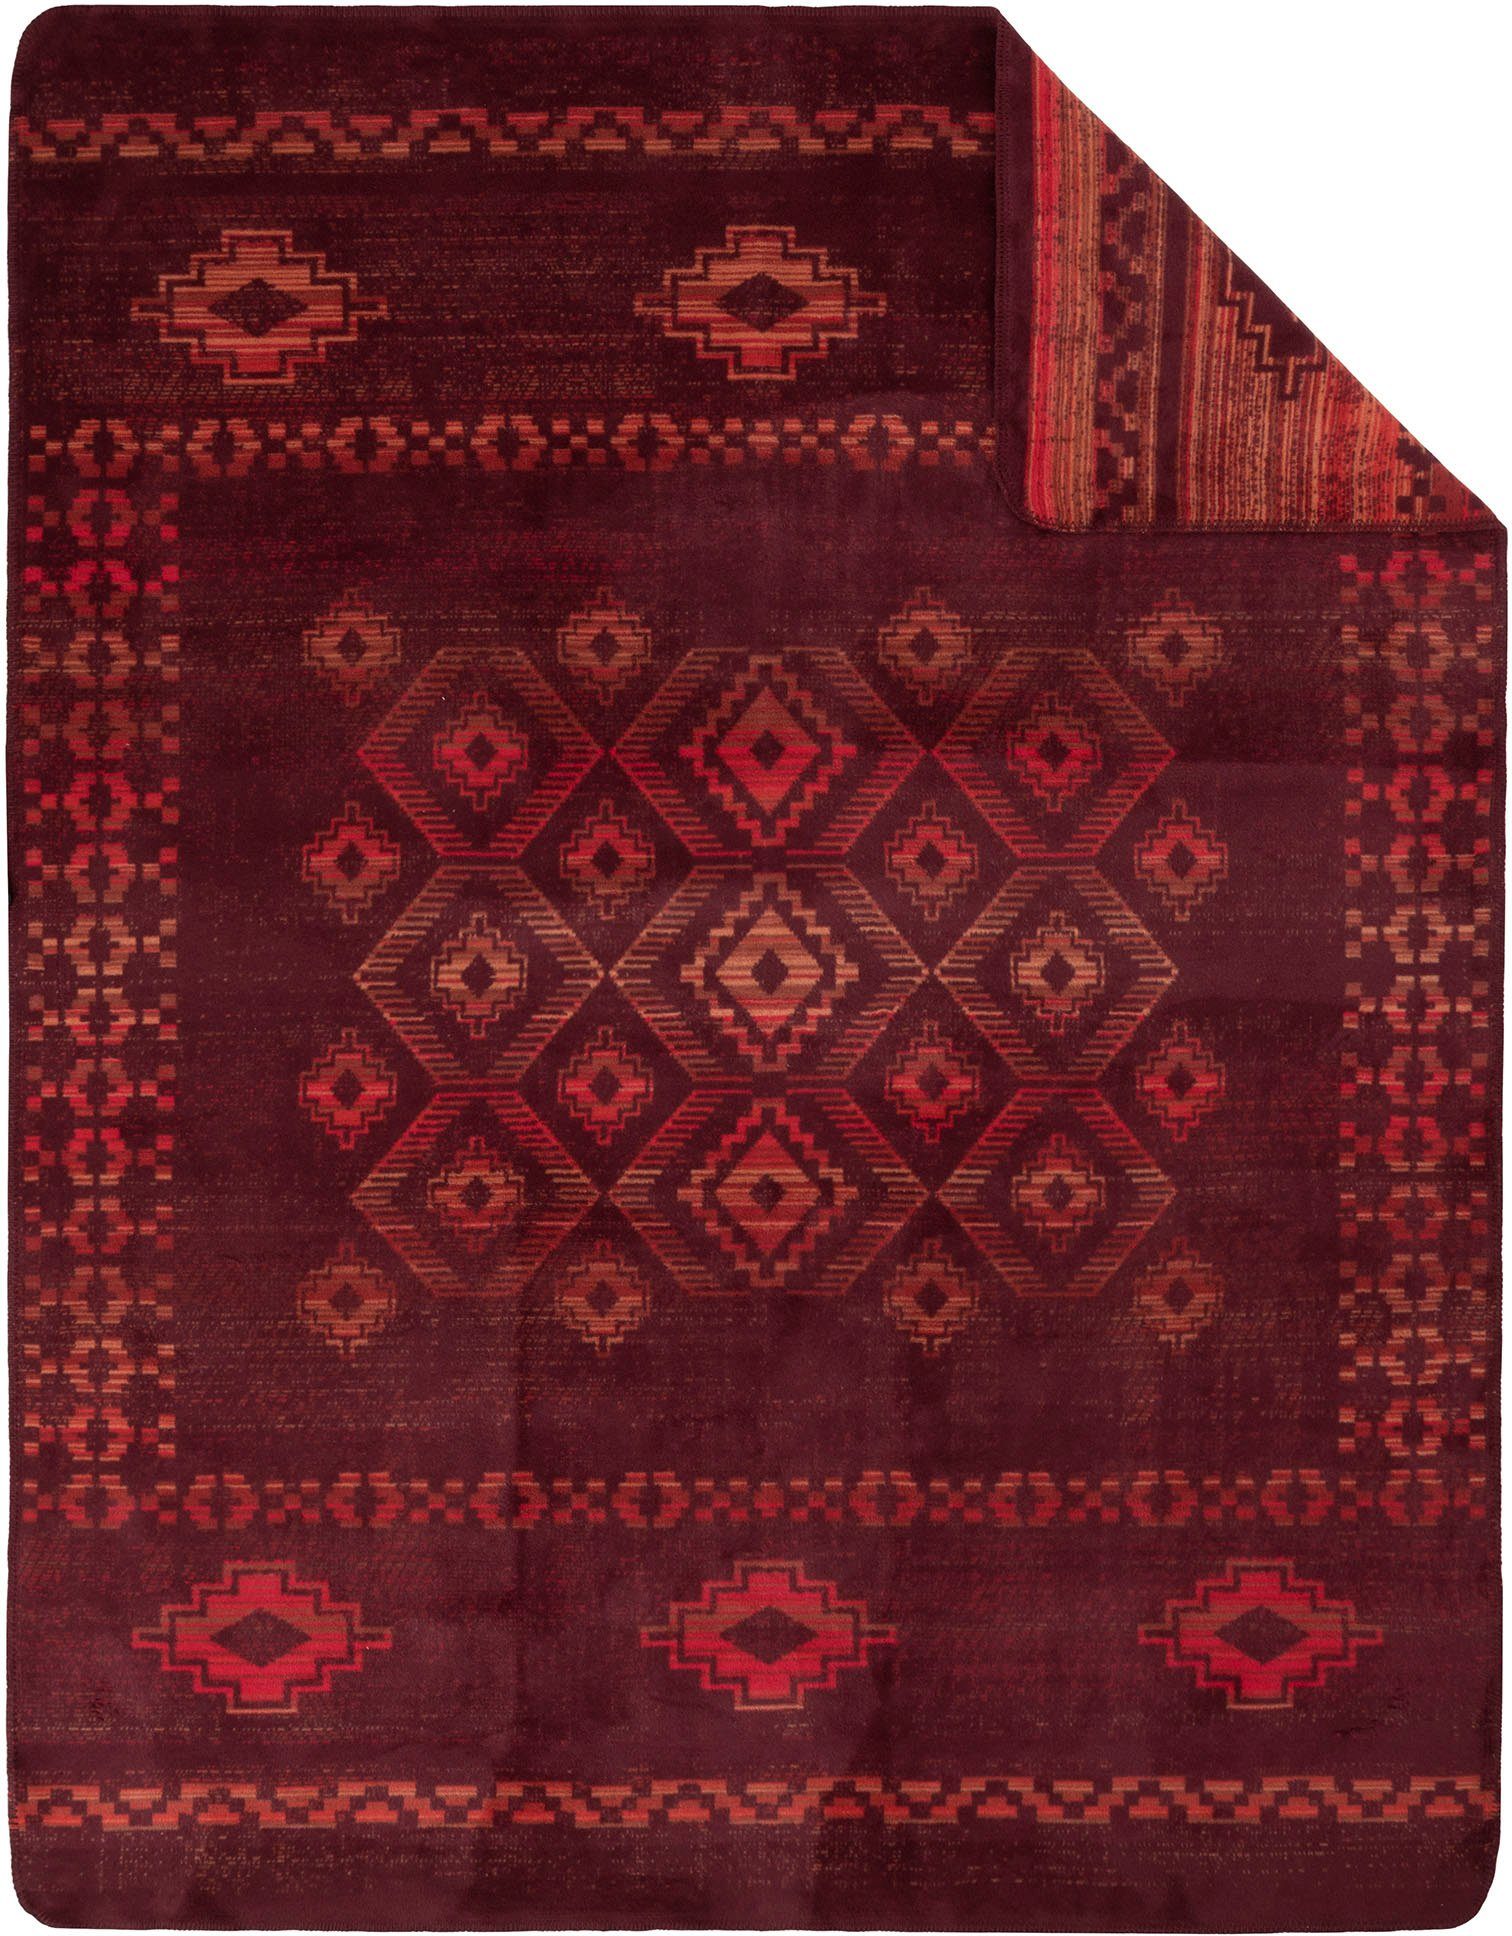 Wohndecke Jacquard Decke jedem IBENA, in Wohnraum optisches Highligt orientalischem Gaya, mit Muster